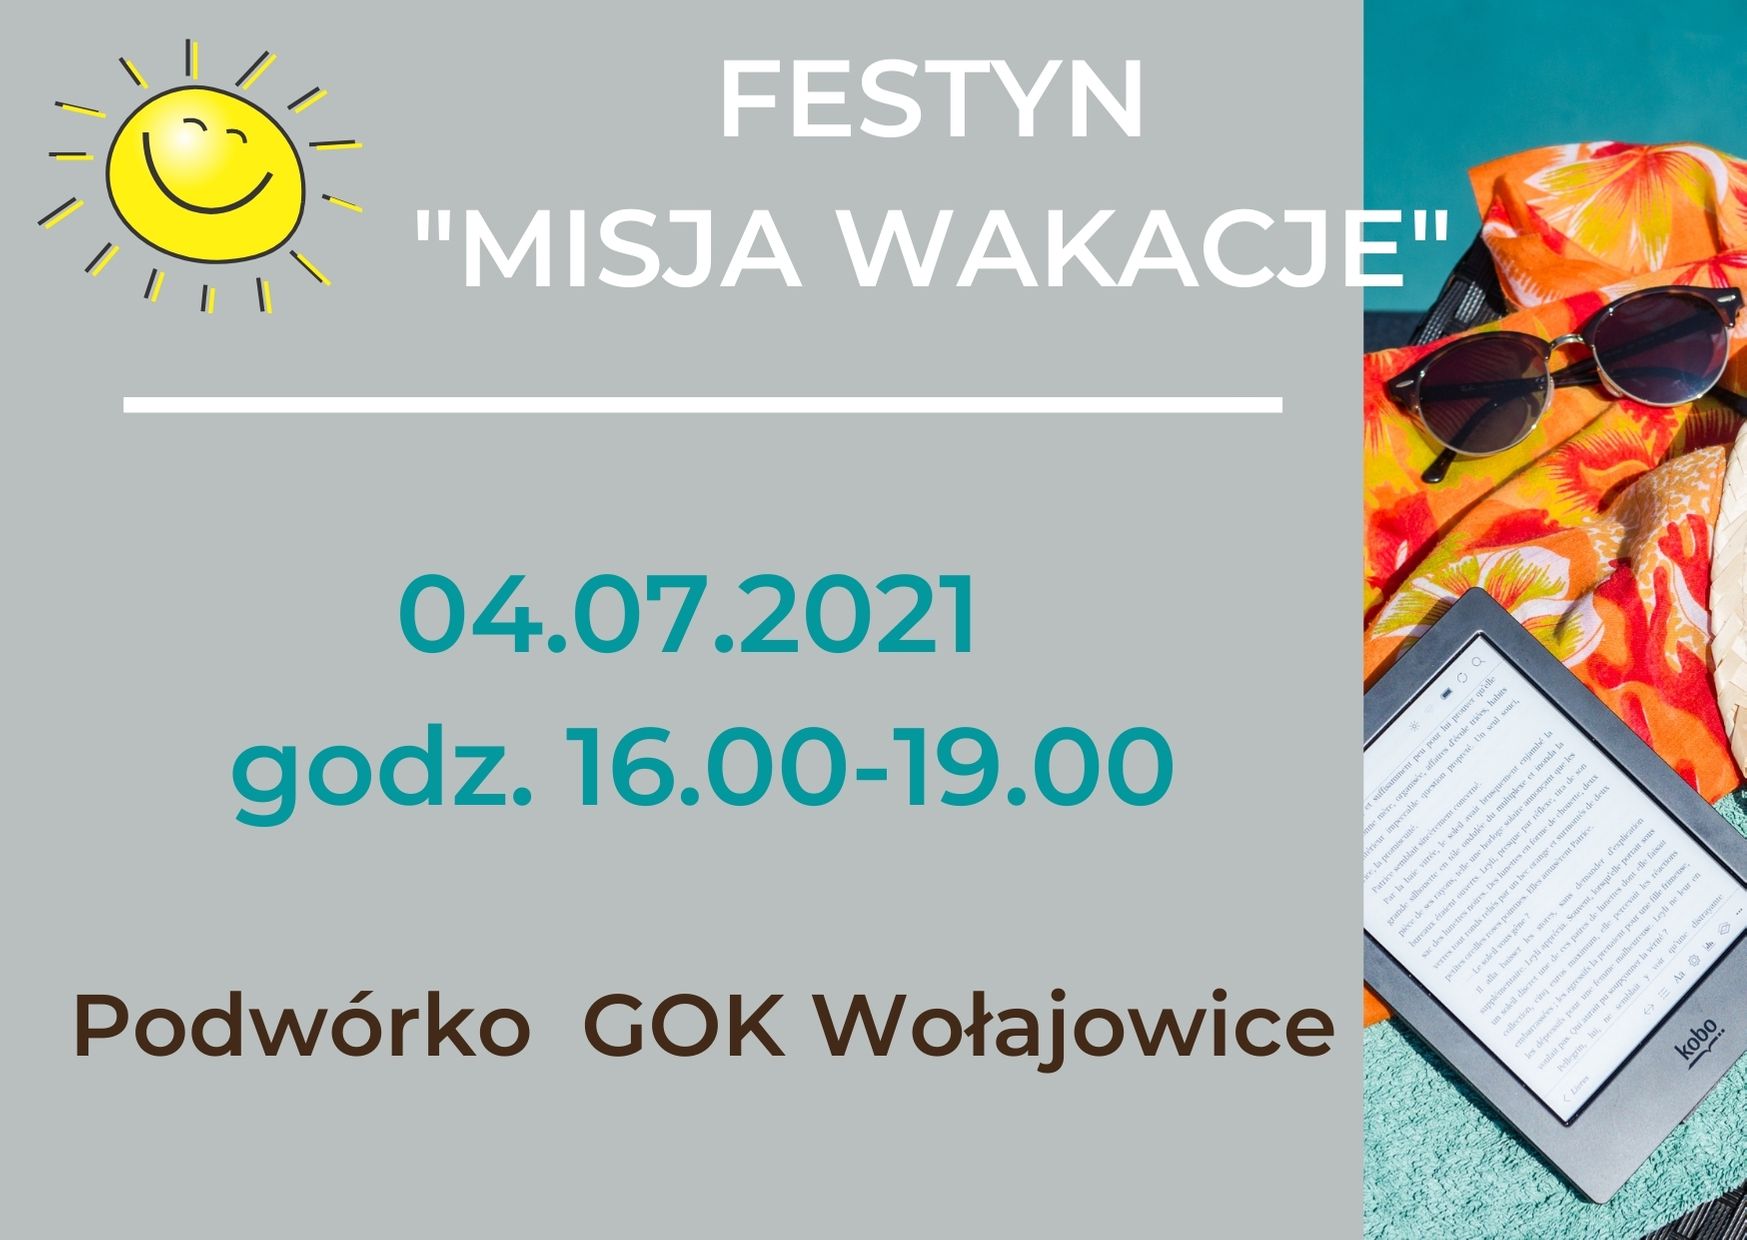 Grafika przedstawia okulary, chustę, notatnik oraz informację : &quot;Festyn Misja Wakacje&quot;, 04.07.2021, godz. 16.00-19.00, podwórko GOK Wołajowice. W lewym górnym rogu znajduje się słoneczko.